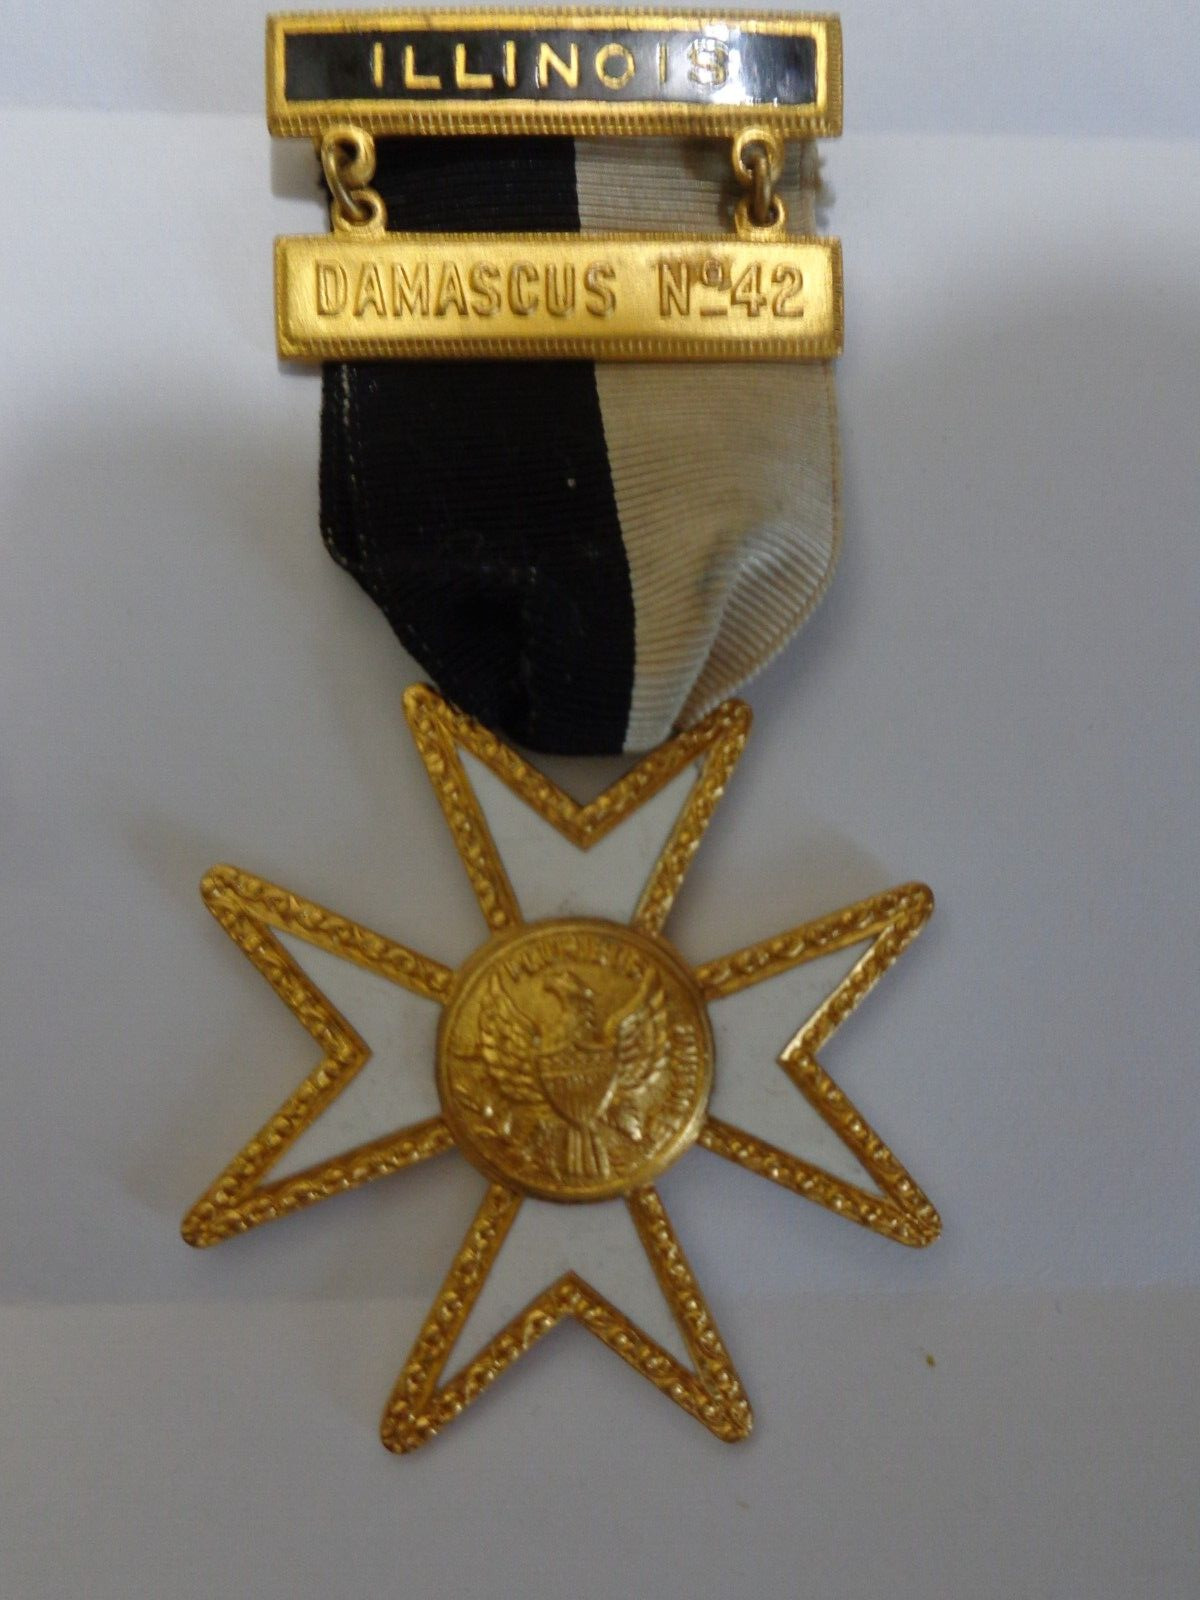 Damascus Commandery 42 Knights Templar Illinois Order of Malta Medal Cross